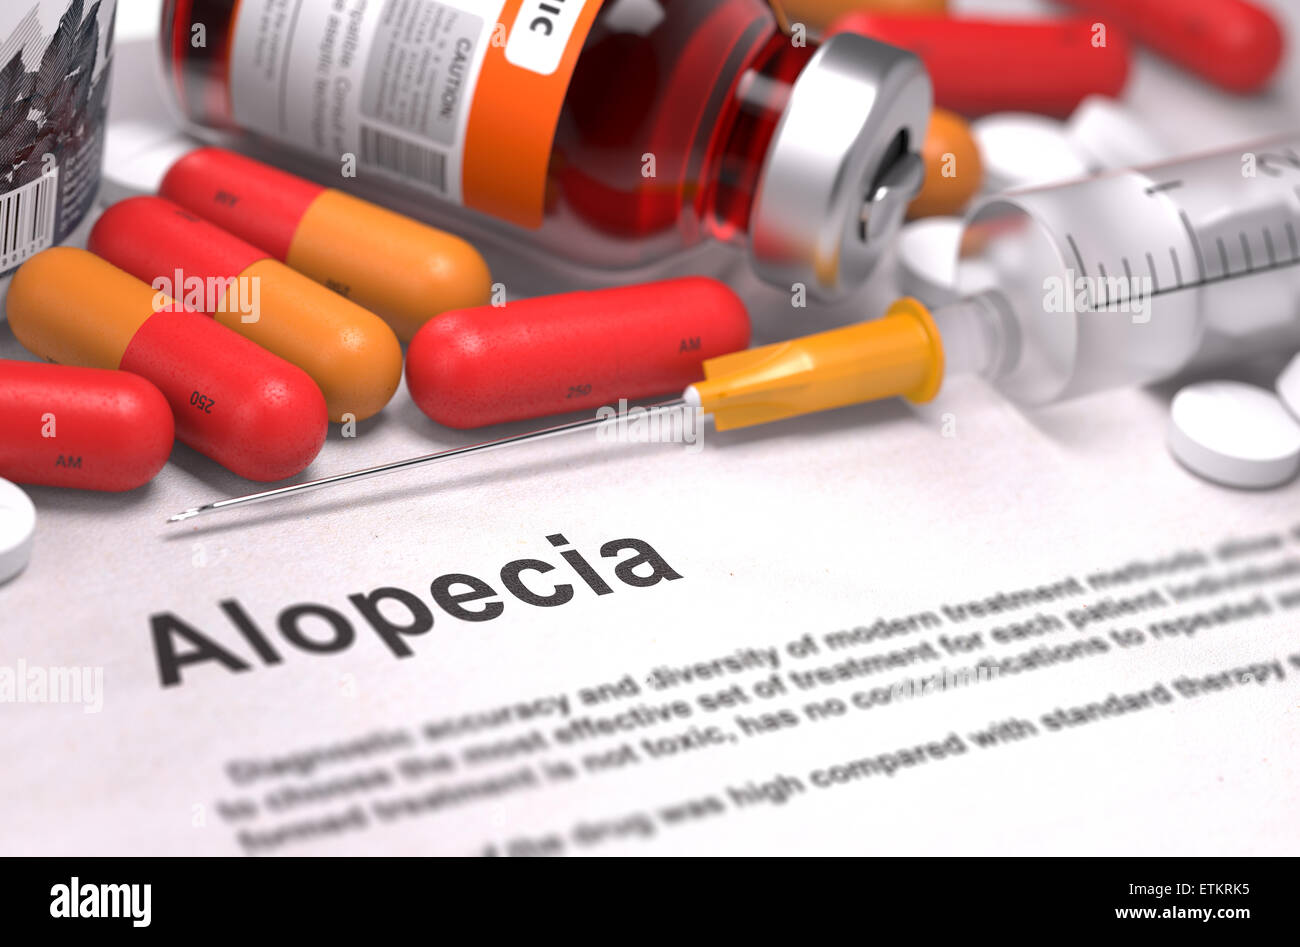 Diagnosis - Alopecia. Medical Concept. 3D Render. Stock Photo